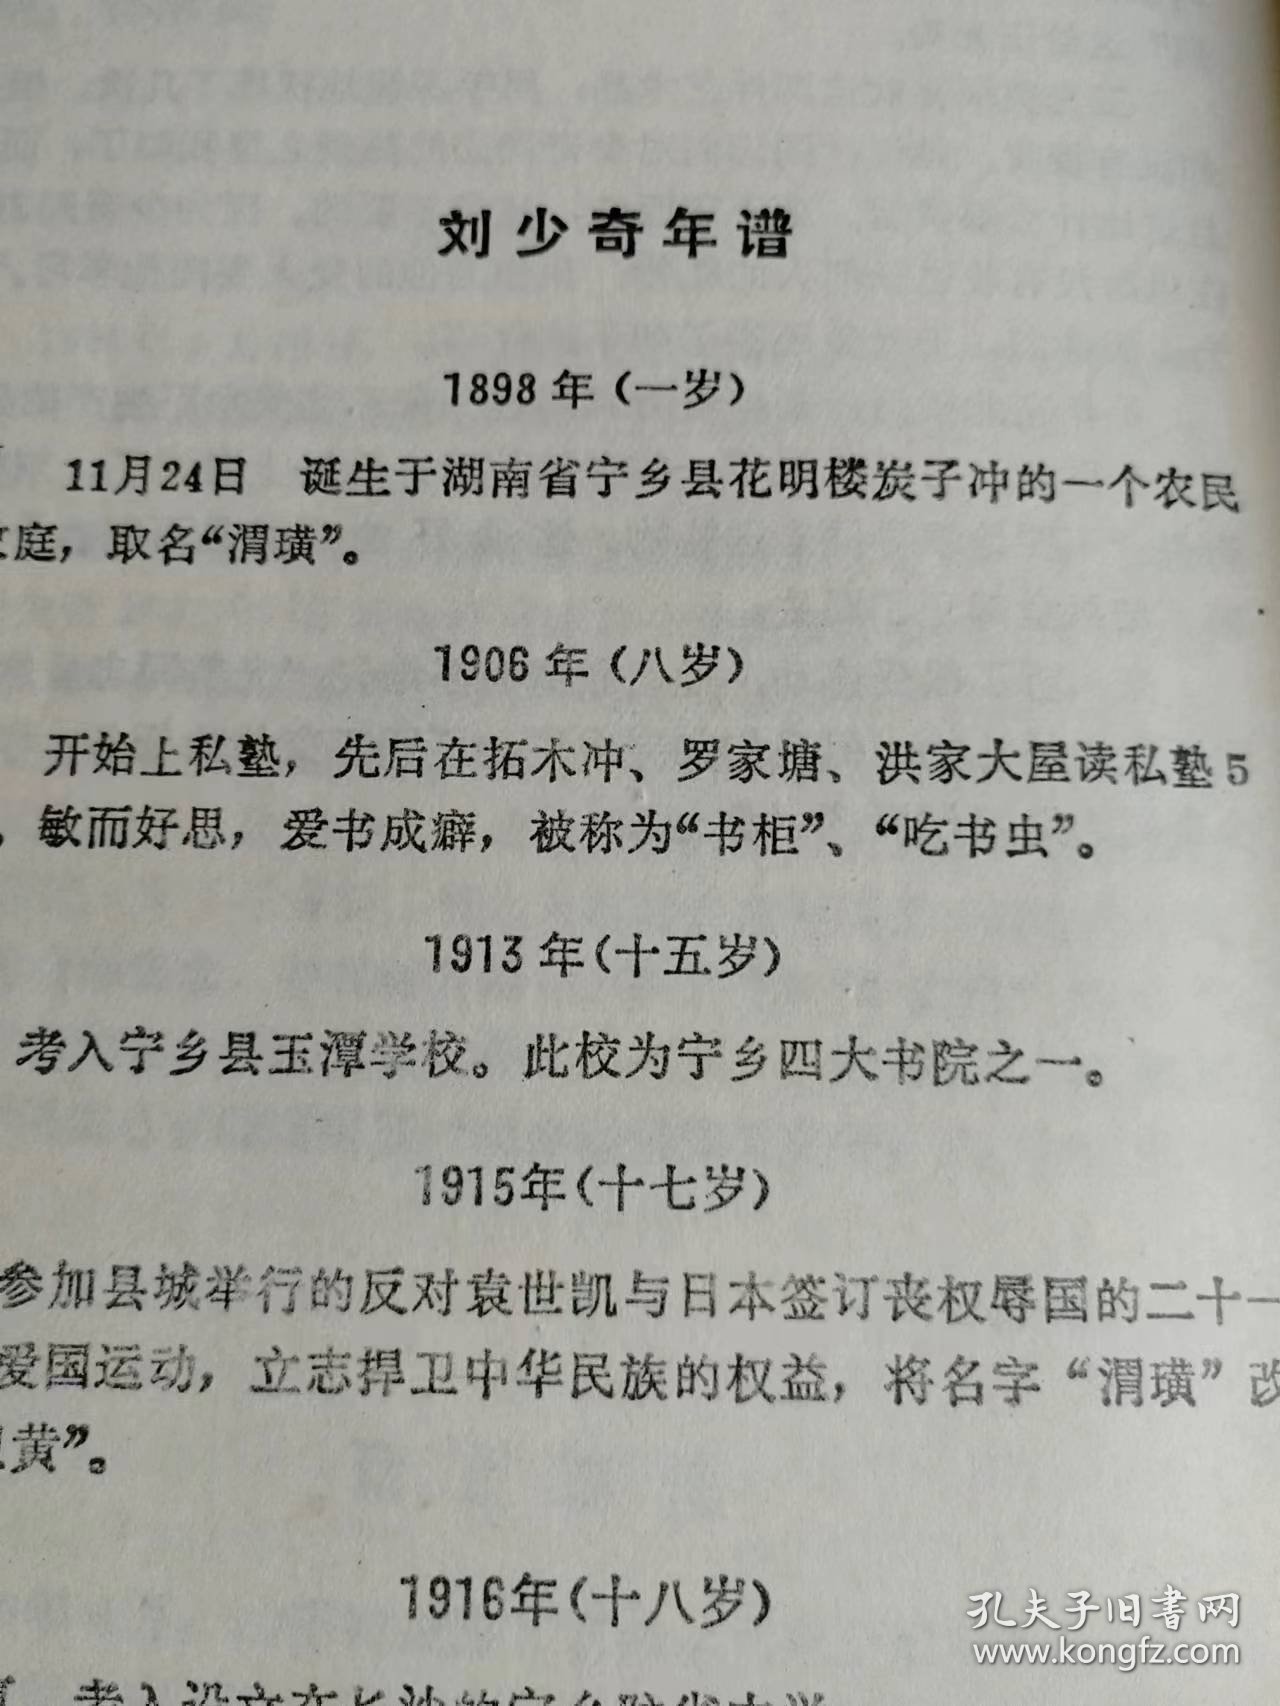 （打折处理，购百元再赠书）92年版辑录535则嘉言懿行的中华人民共和国第二任国家主席《刘少奇风范词典》版本少见存世量少